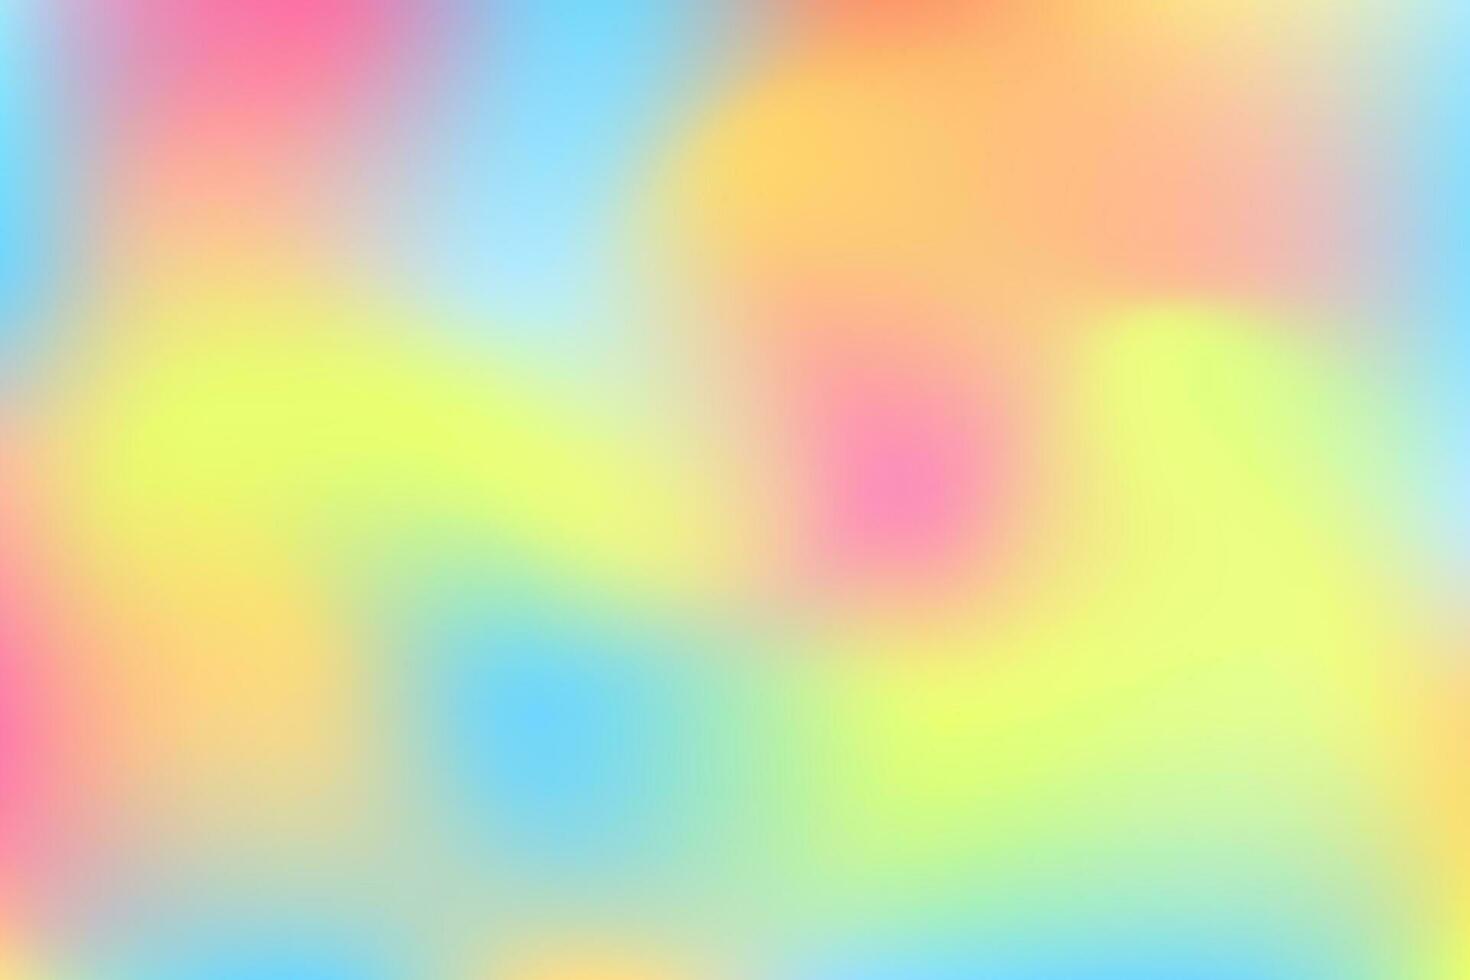 beschwingt und Sanft Pastell- Gradient glatt Farbe Hintergrund vektor